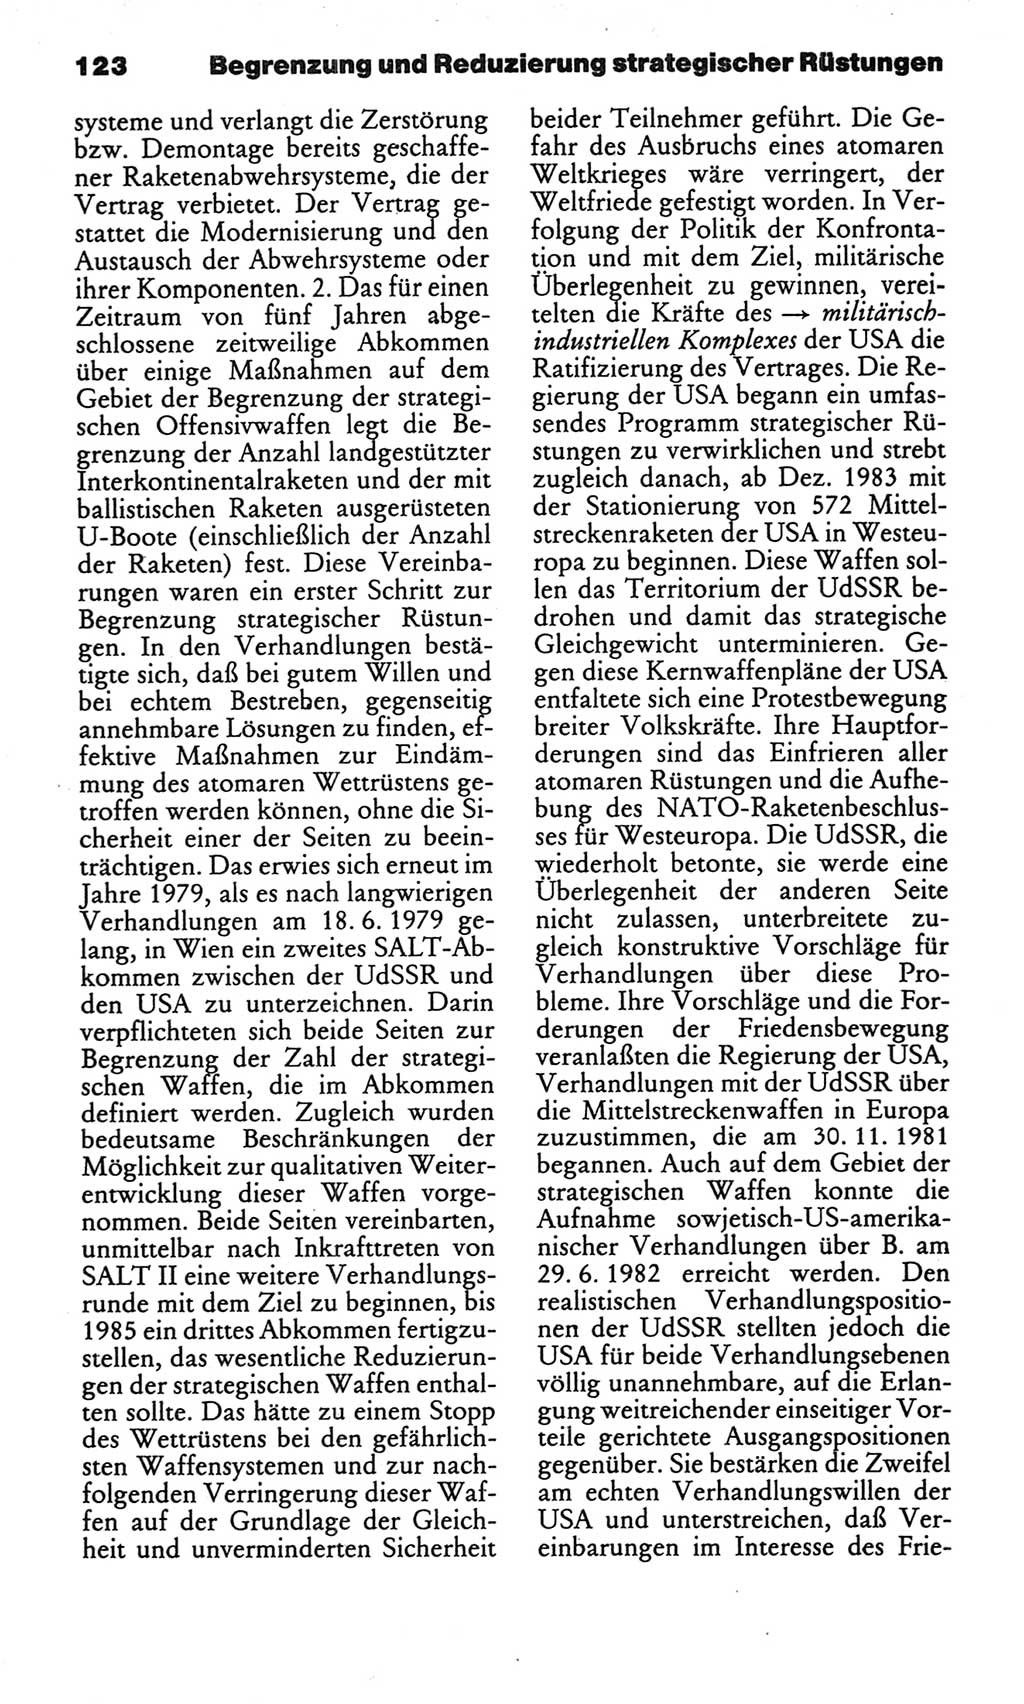 Kleines politisches Wörterbuch [Deutsche Demokratische Republik (DDR)] 1986, Seite 123 (Kl. pol. Wb. DDR 1986, S. 123)